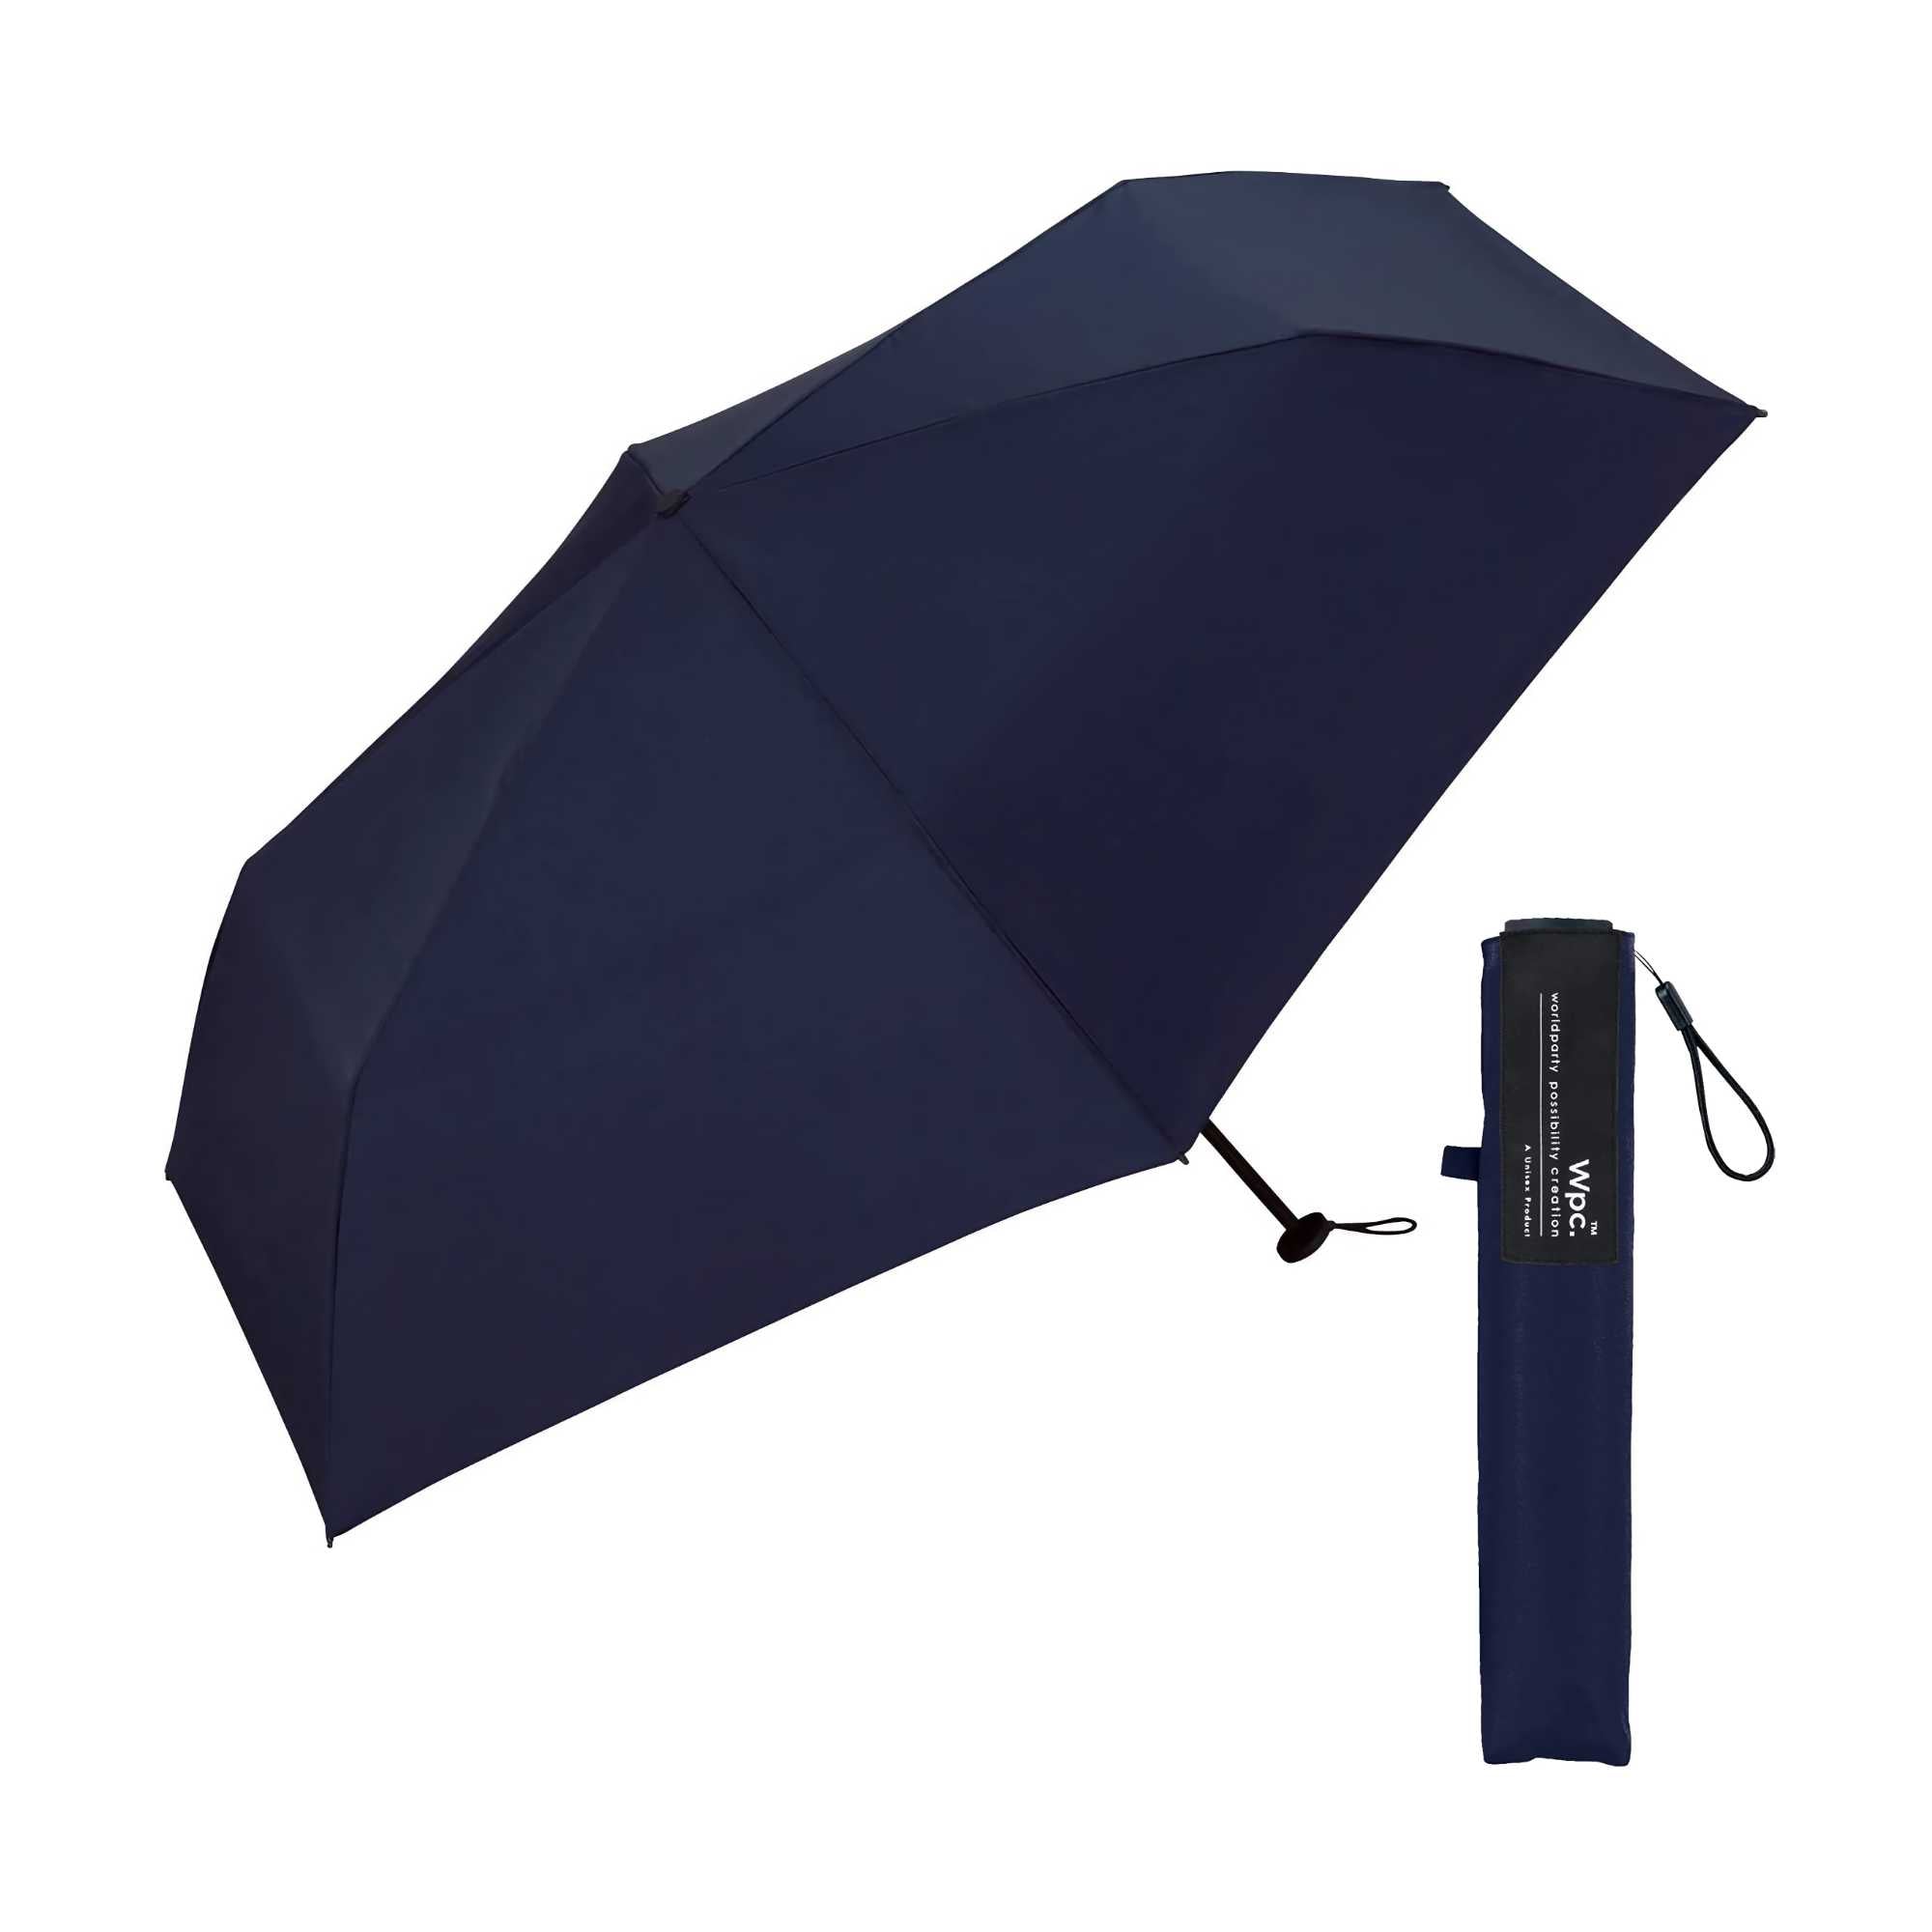 Wpc. Air-Light UX006 Lightweight Umbrella, navy